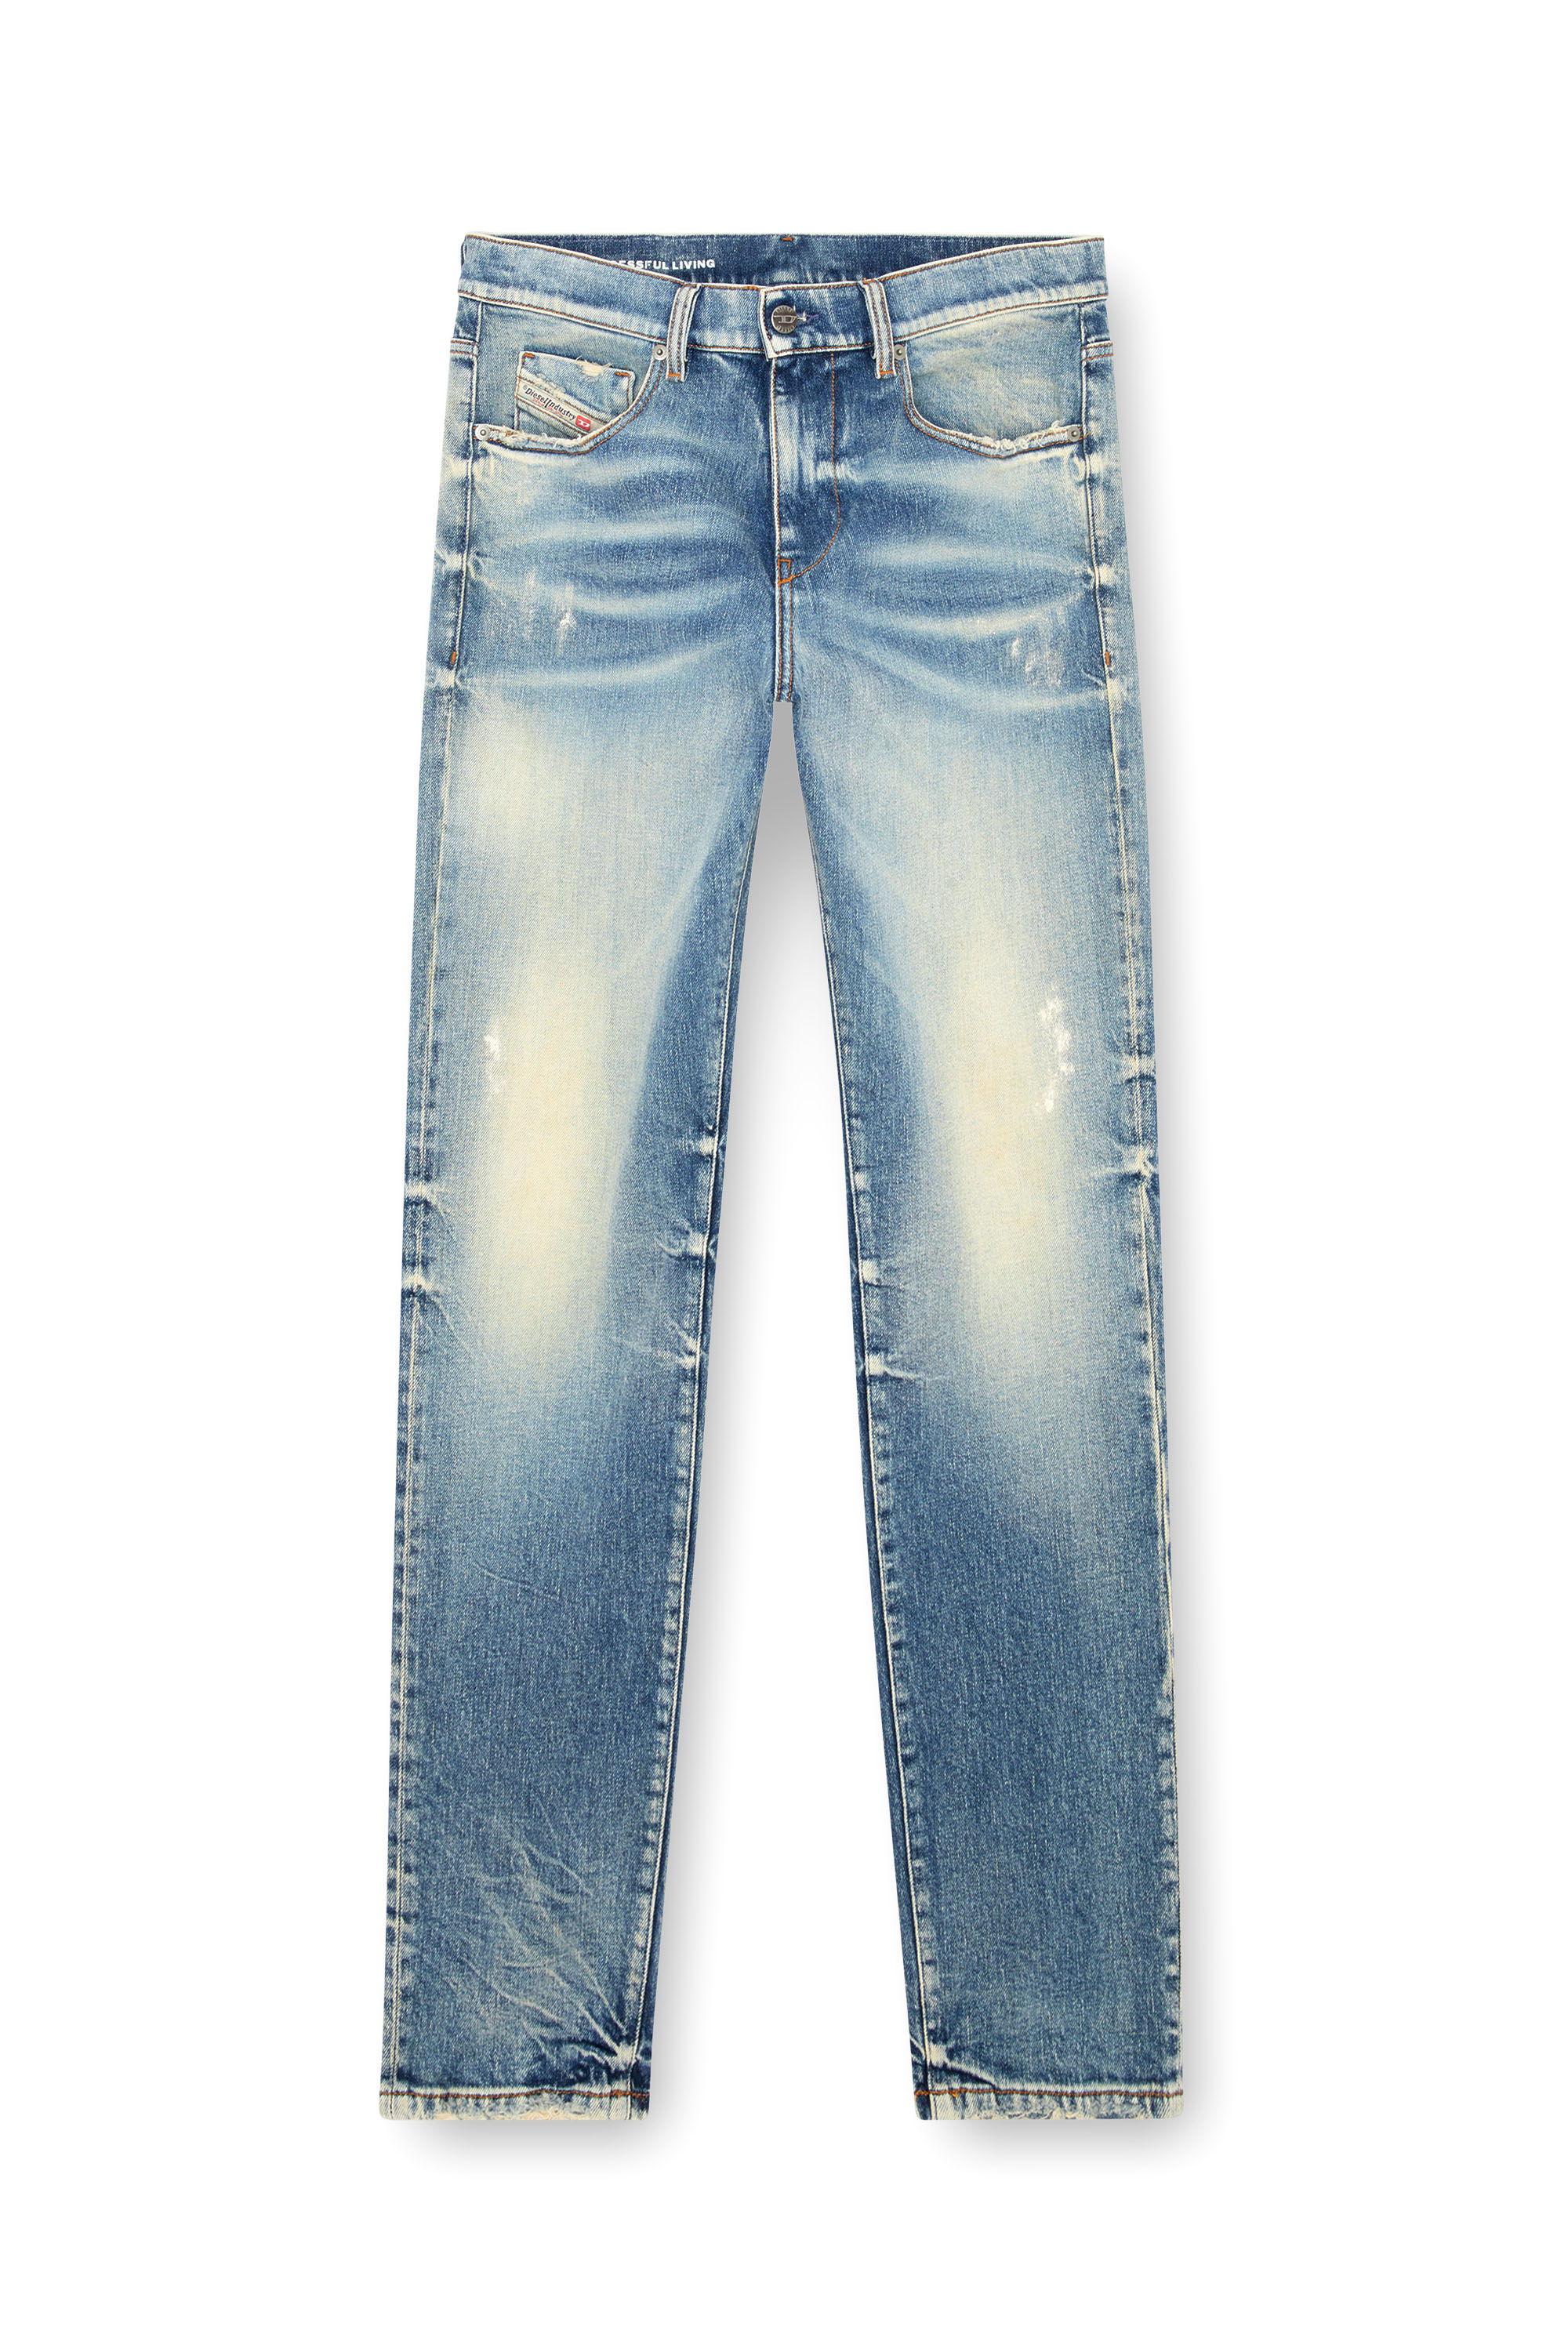 Diesel - Slim Jeans 2019 D-Strukt 007V8, Hombre Slim Jeans - 2019 D-Strukt in Azul marino - Image 3